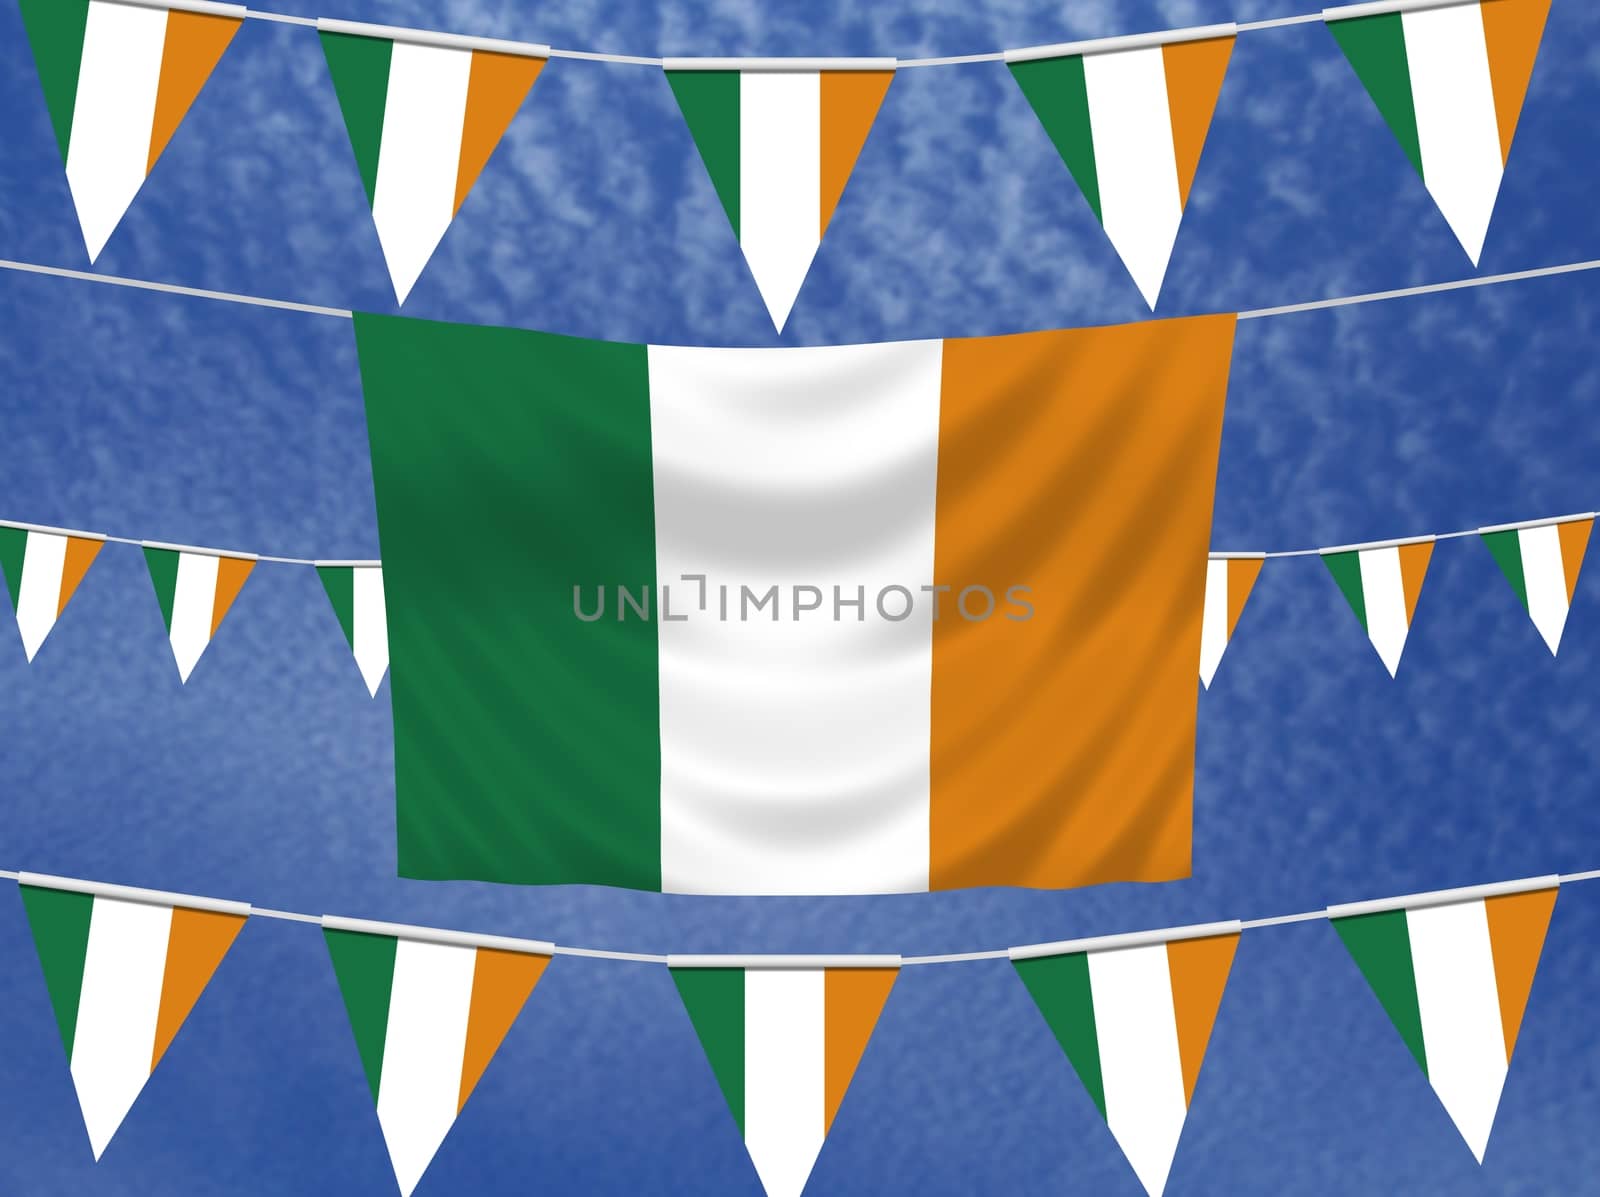 Irish Flags by darrenwhittingham